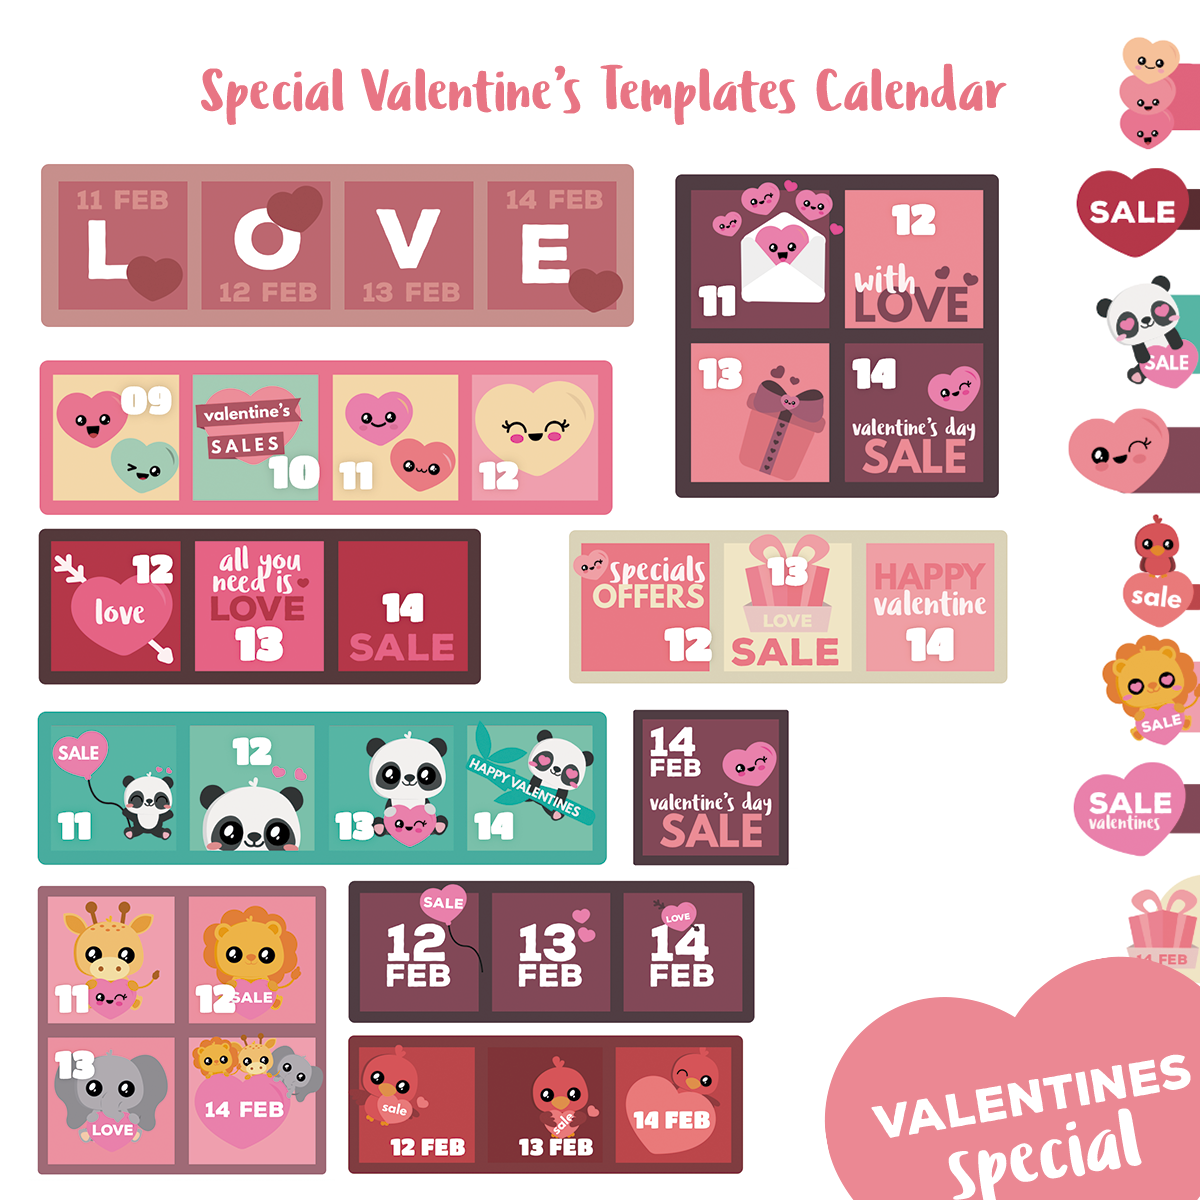 Deals Calendar - WordPress Plugin - Special Valentine's Day - 1